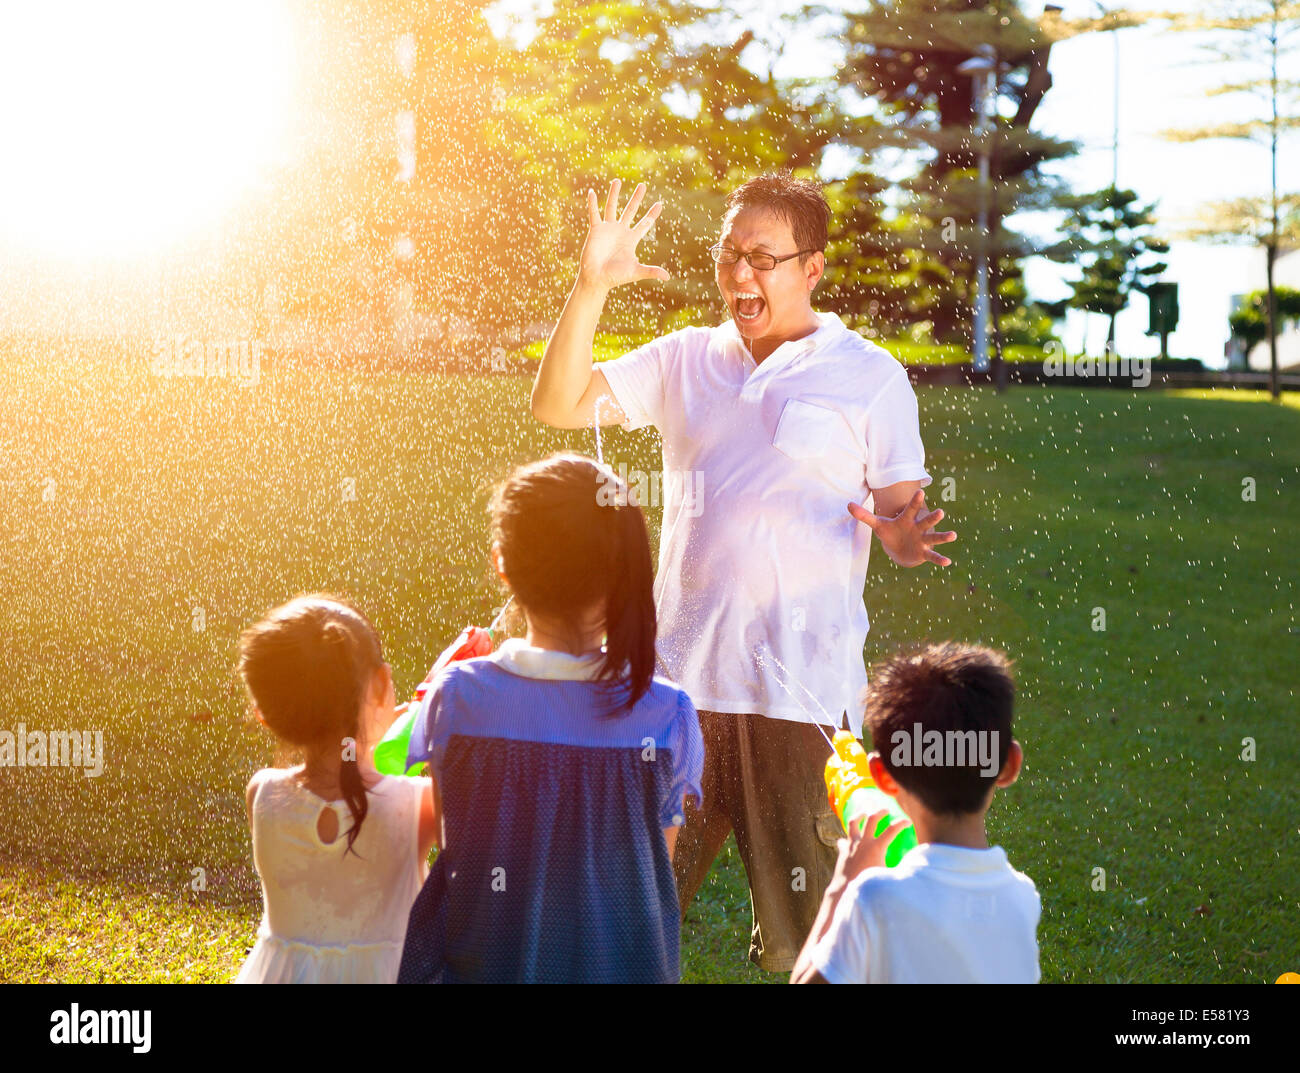 Bambini spruzzare acqua al Padre insieme da pistole di acqua Foto Stock